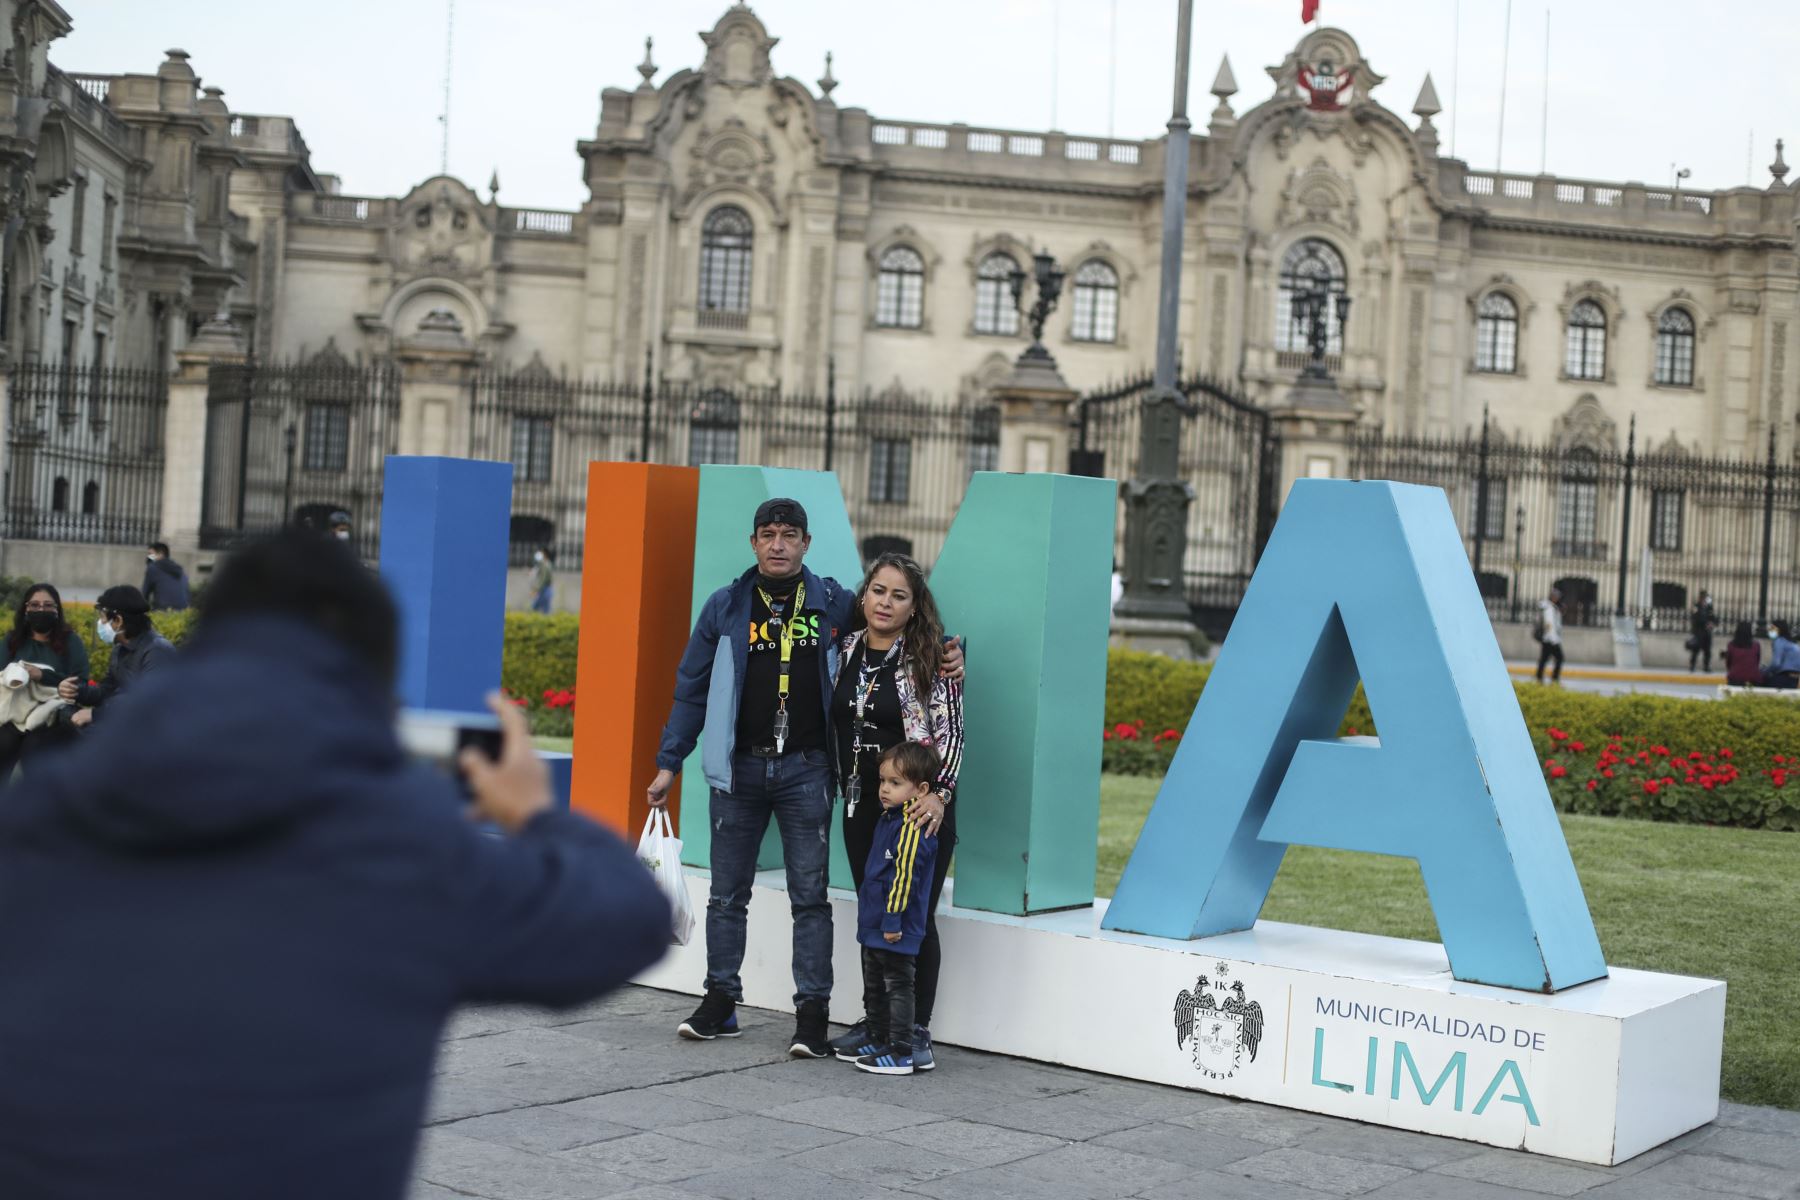 Luego de casi 2 meses de permanecer cerrada, se reabrieron los accesos a la Plaza de Armas de Lima. La plaza fue cerrada como medida de precaución debido a manifestaciones de grupos radicales opositores al gobierno de turno. Foto: ANDINA/Carla Patiño Ramírez